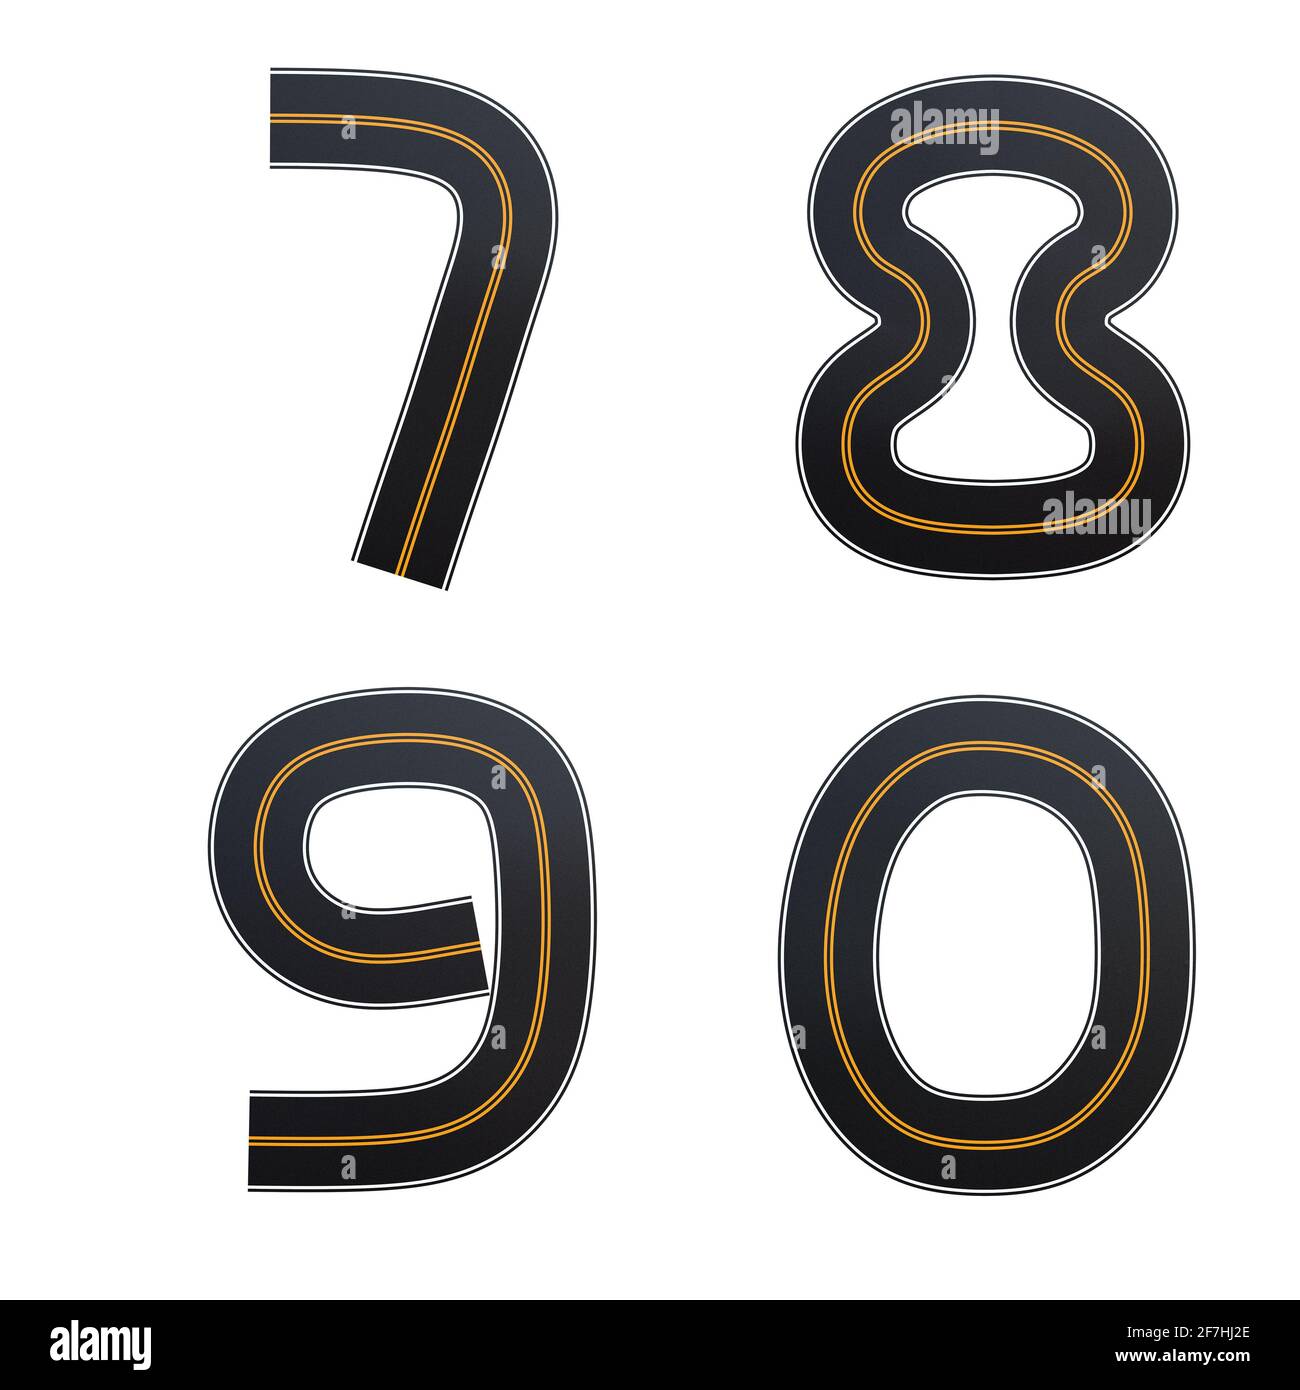 Rappresentazione 3D dell'alfabeto delle strade asfaltate - cifre 7-0 Foto Stock